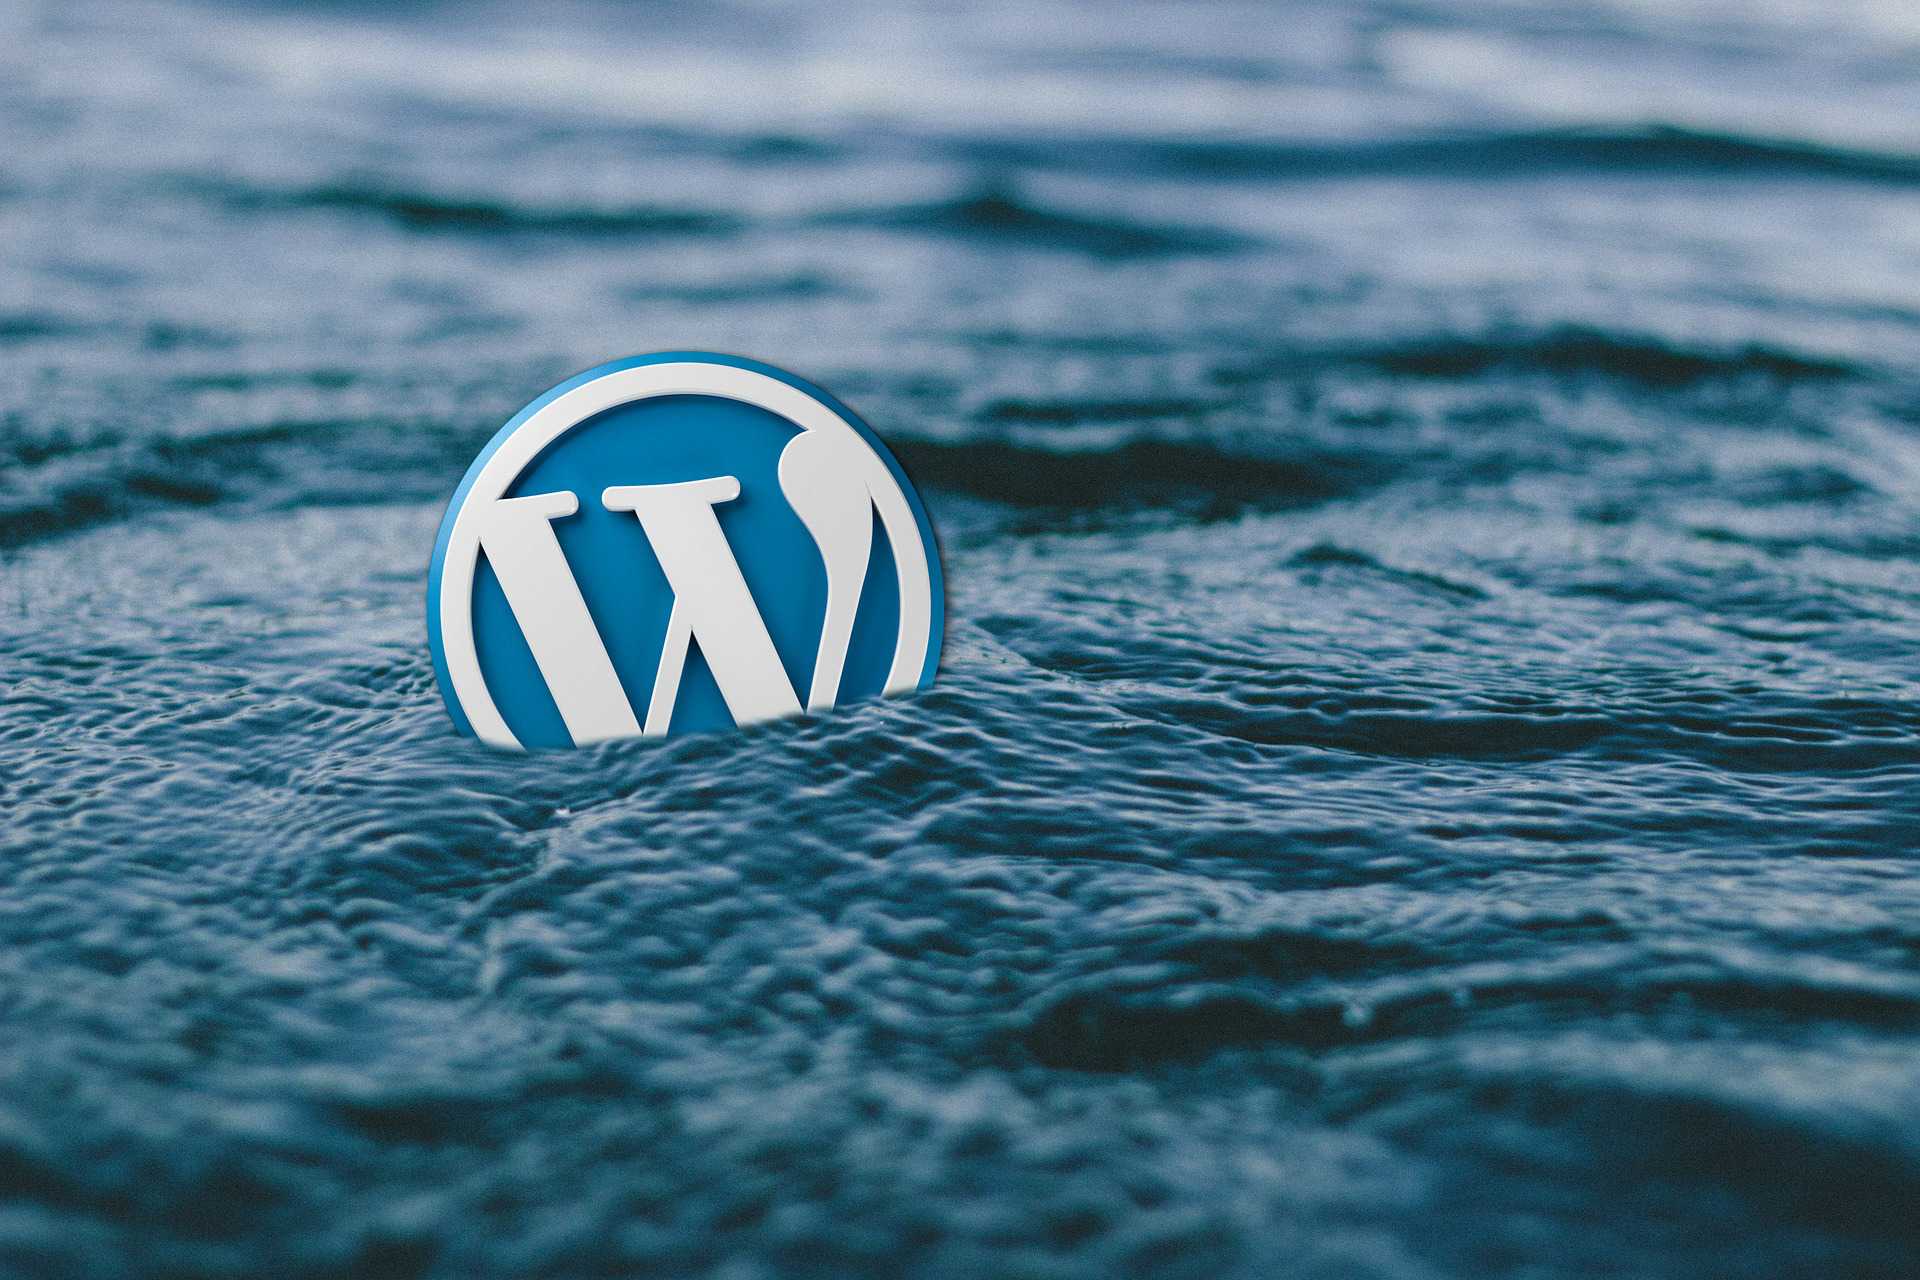 Zeigt das WordPress-Logo beim Schwimmen auf dem offenen Meer. Das Logo ist ein weißes großes W auf einem blauen Kreis